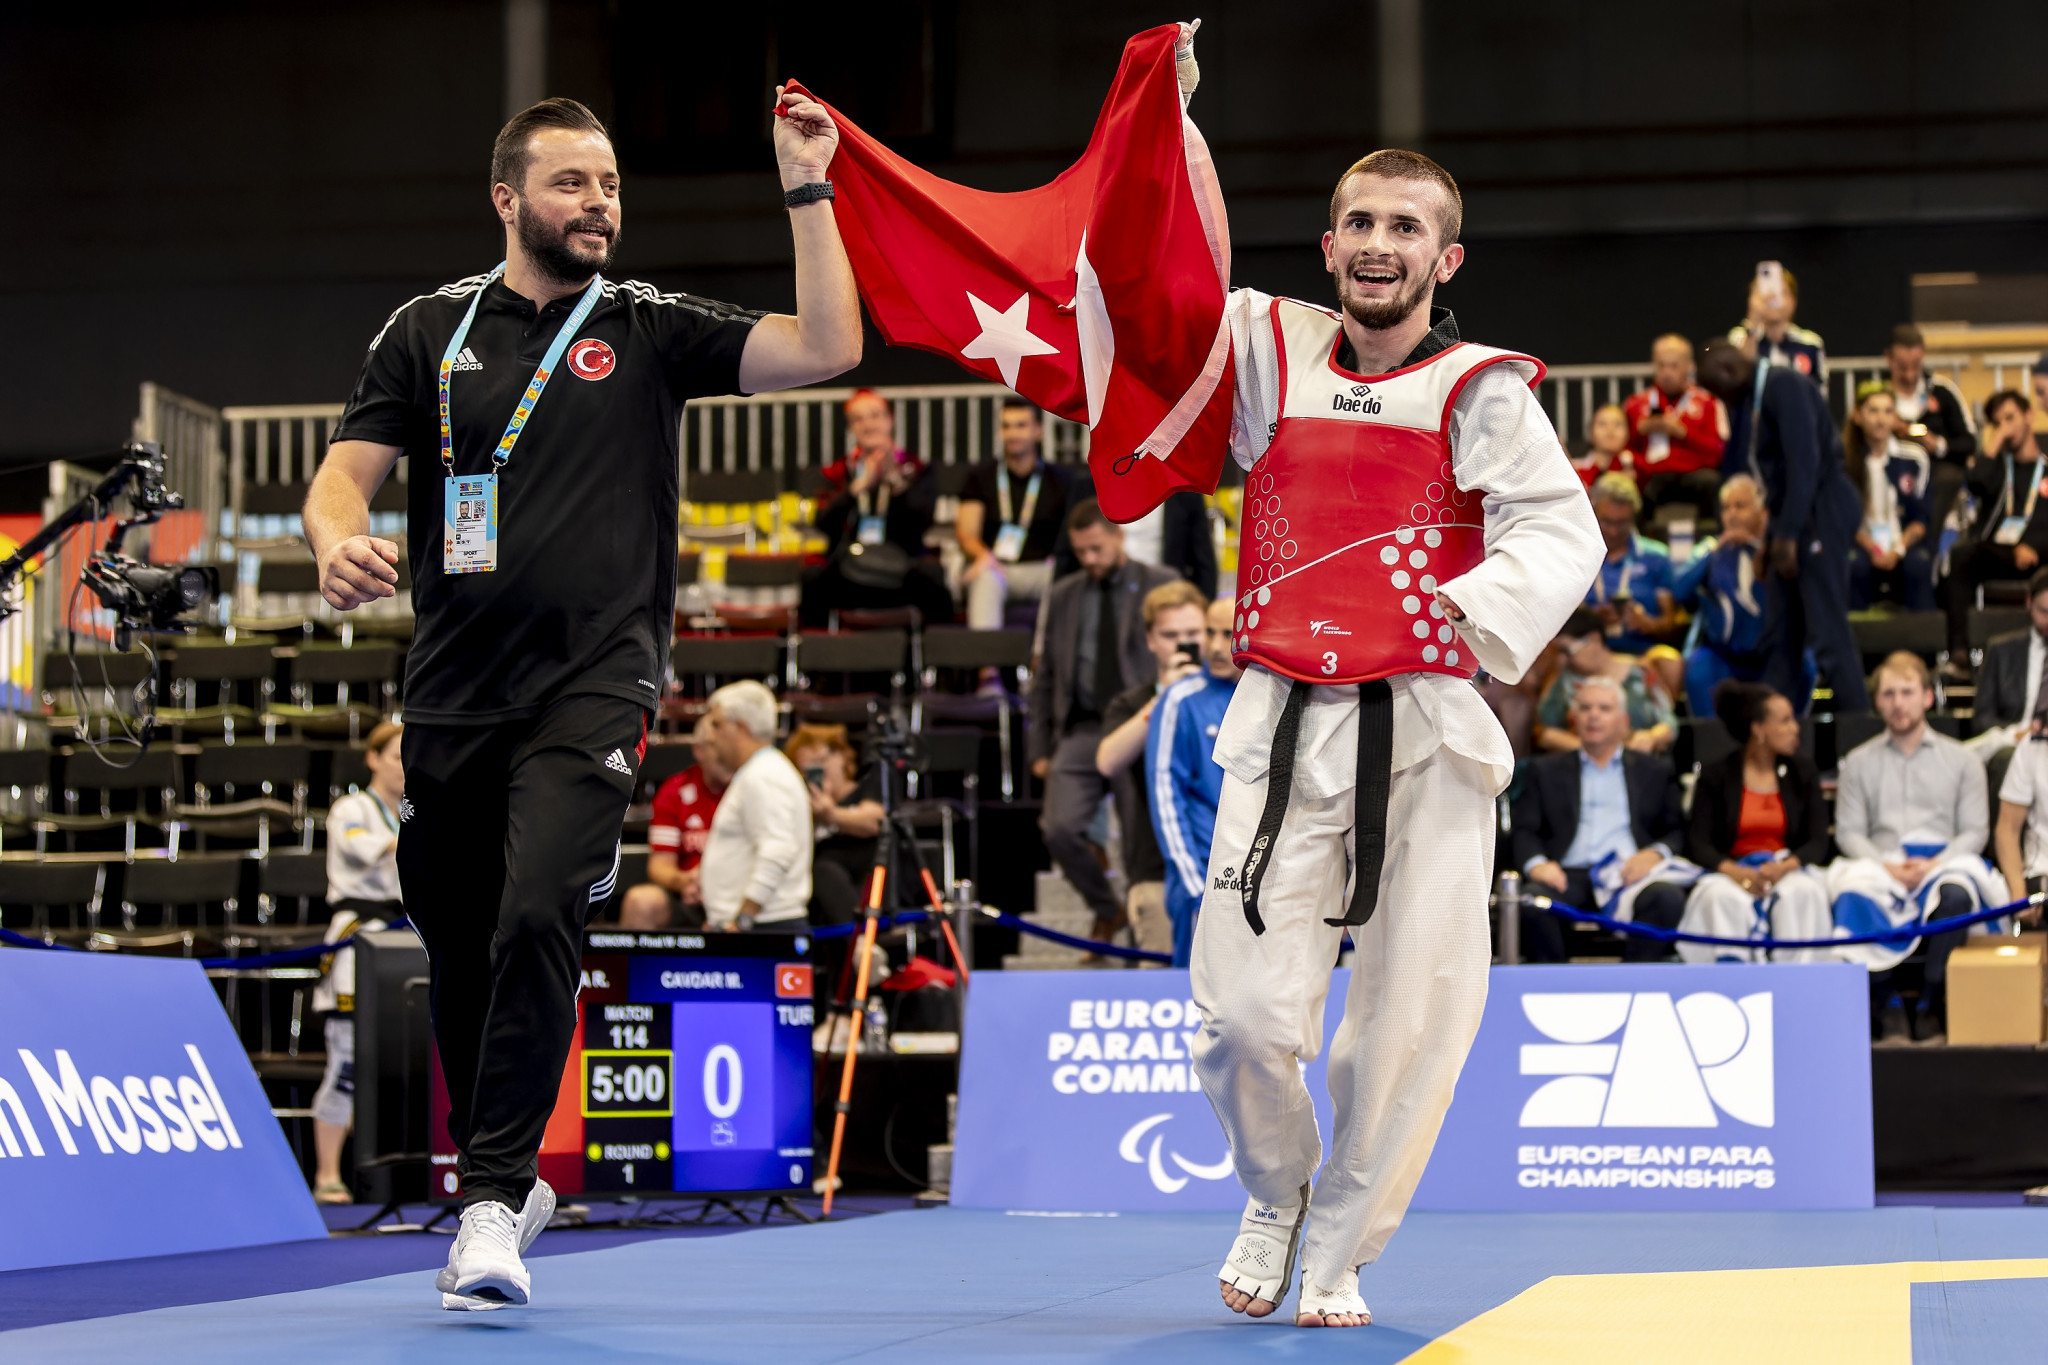 Turkey bag brace of taekwondo titles at European Para Championships